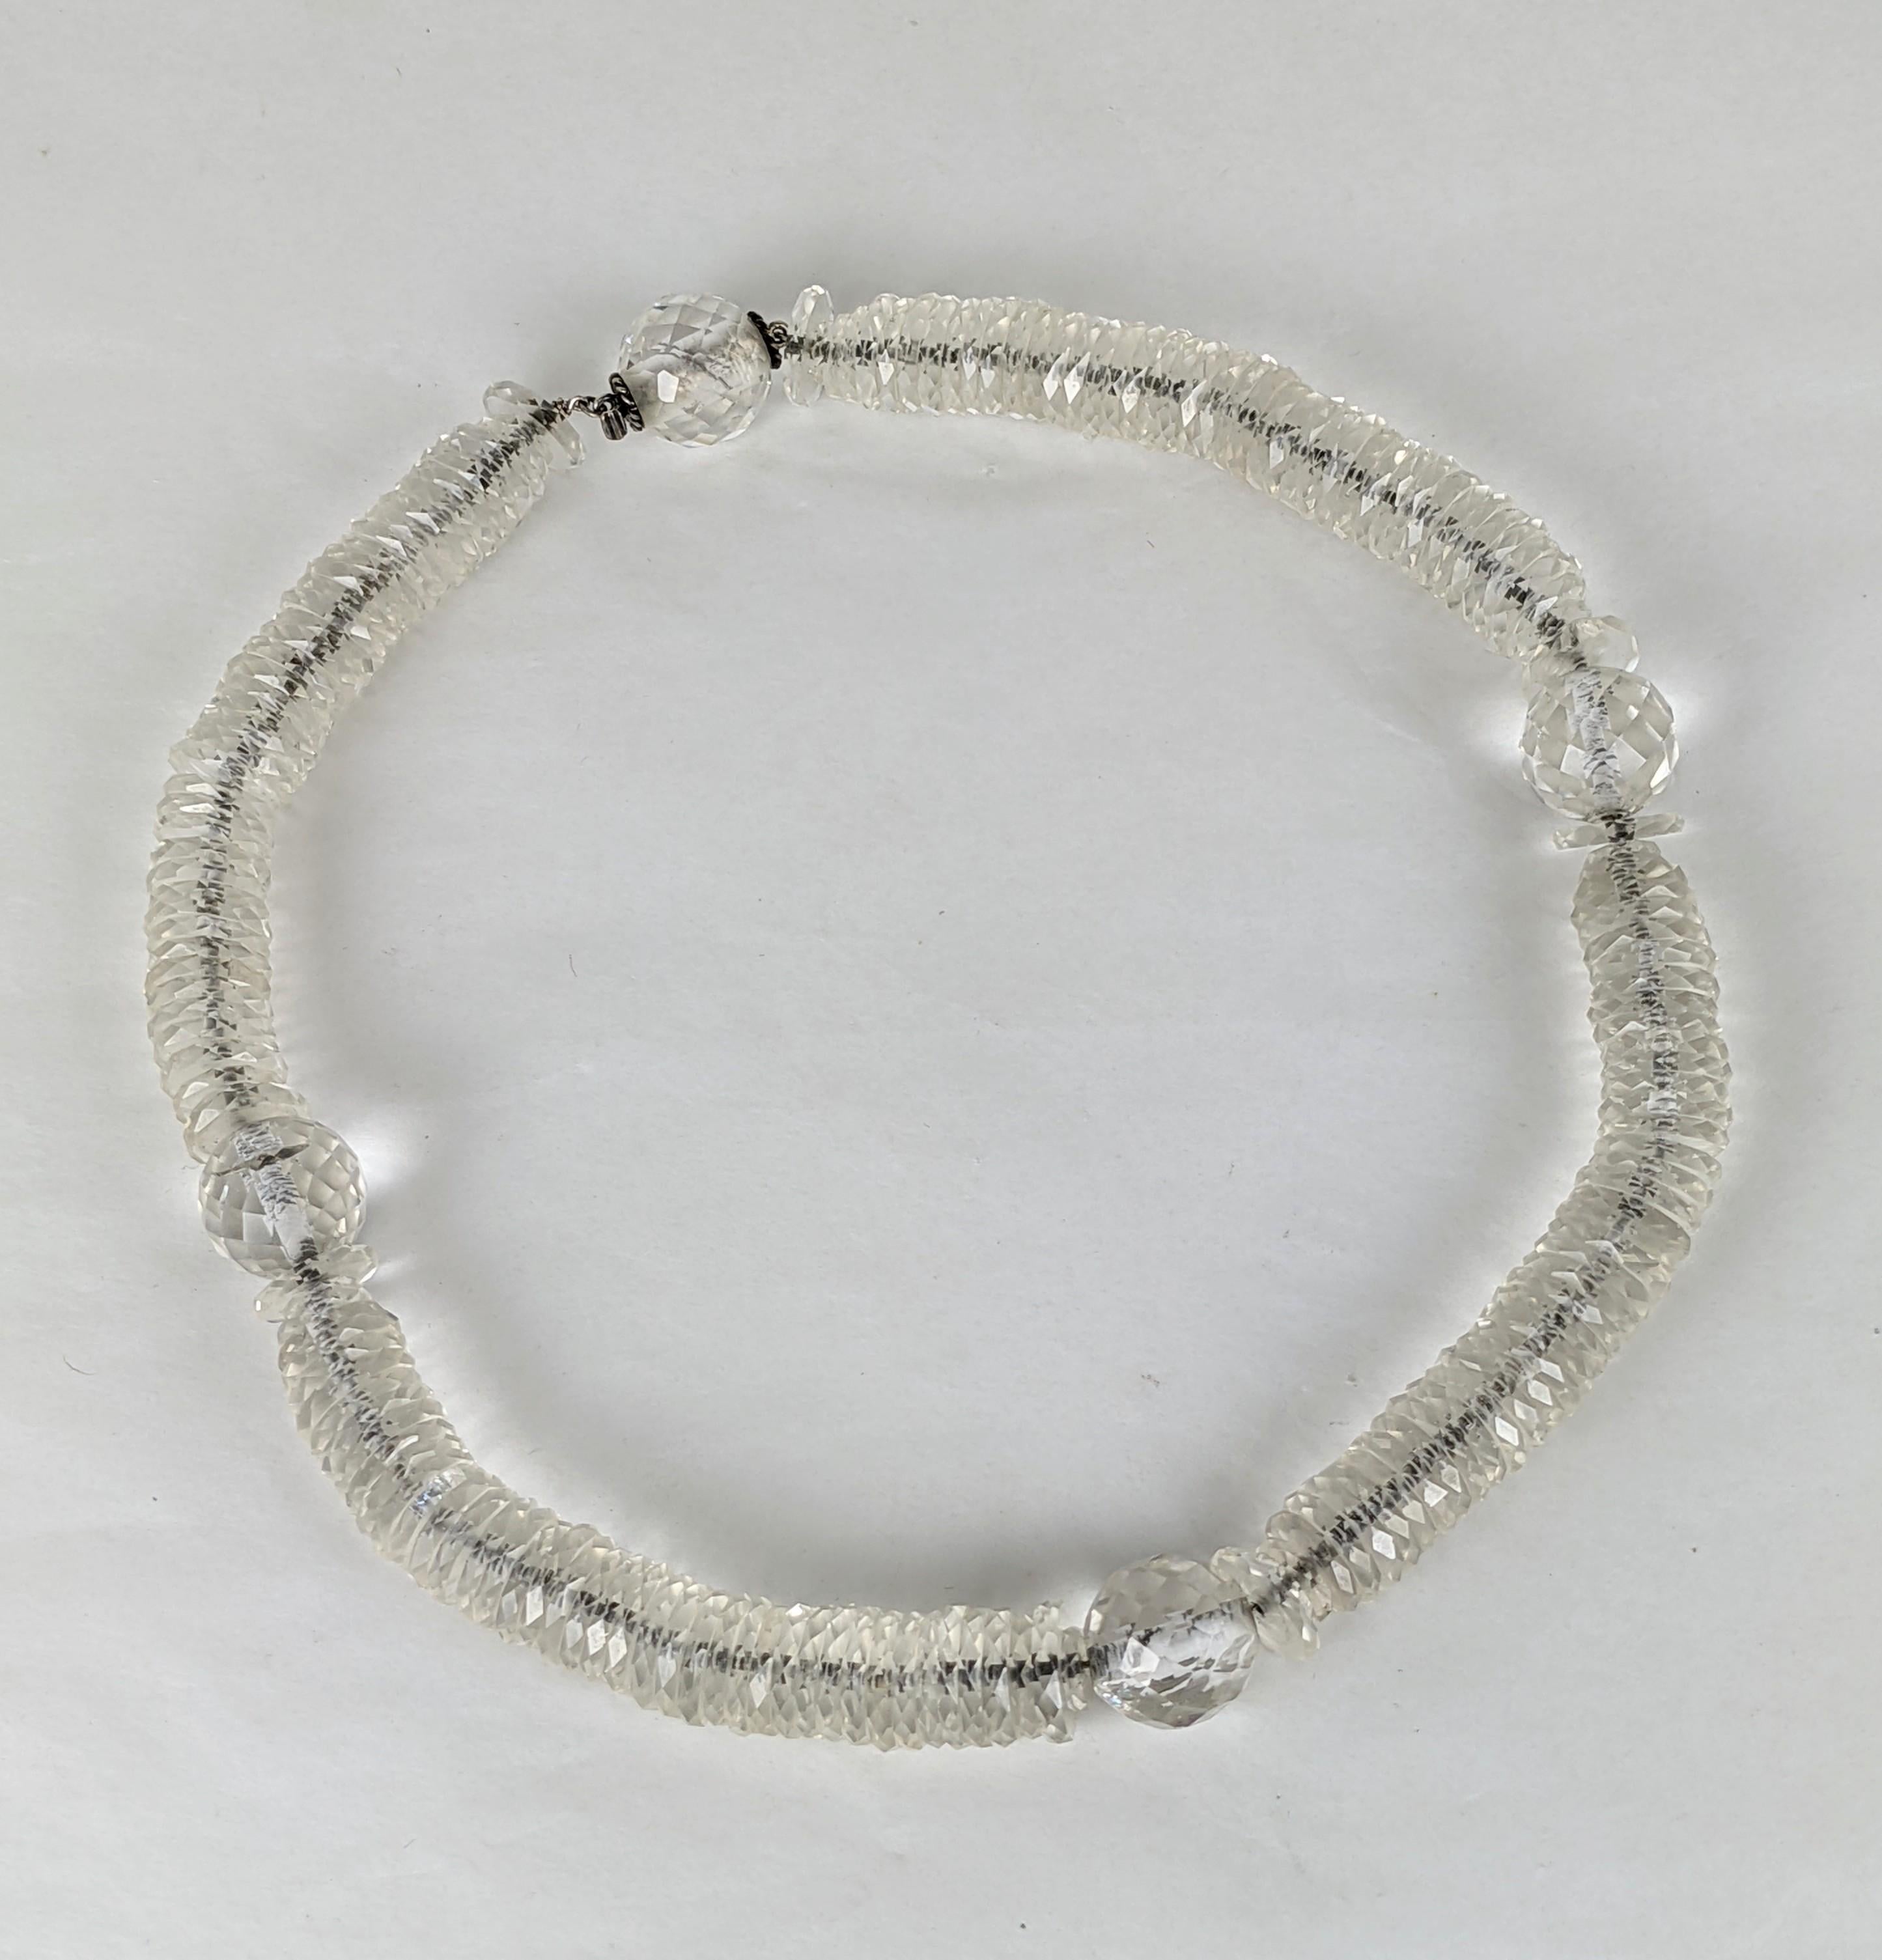 Ungewöhnliche französische Art Deco Kette in facettiertem Kristall mit mehreren Rondellen und Perlen. Die Halskette ist an einer feinen Silberkette aufgereiht. Ungewöhnlicher, unsichtbarer Silberperlenverschluss mit fließendem, elegantem